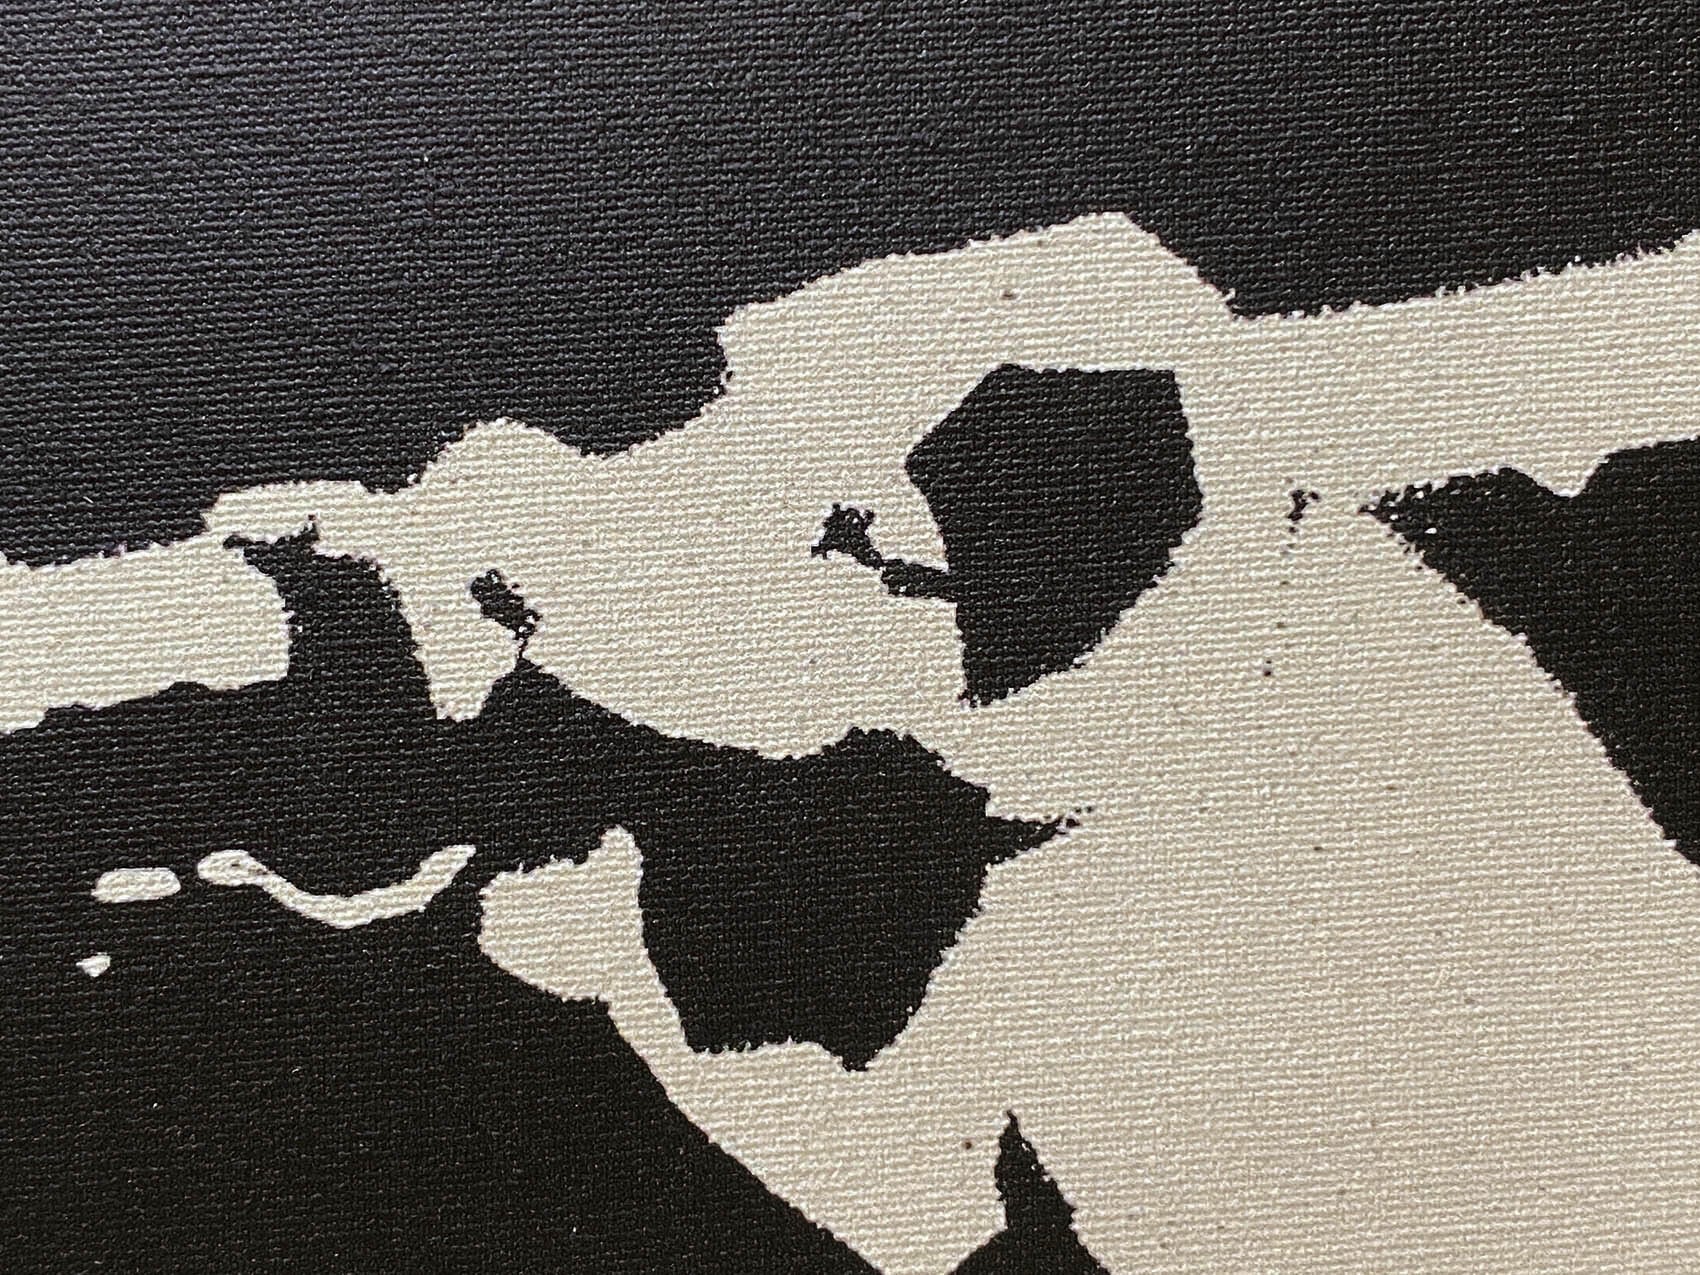 バンクシー作品「ロケットランチャー ドッグ/Rocket Launcher Dog」展示用フック付きキャンバスジークレ Banksy